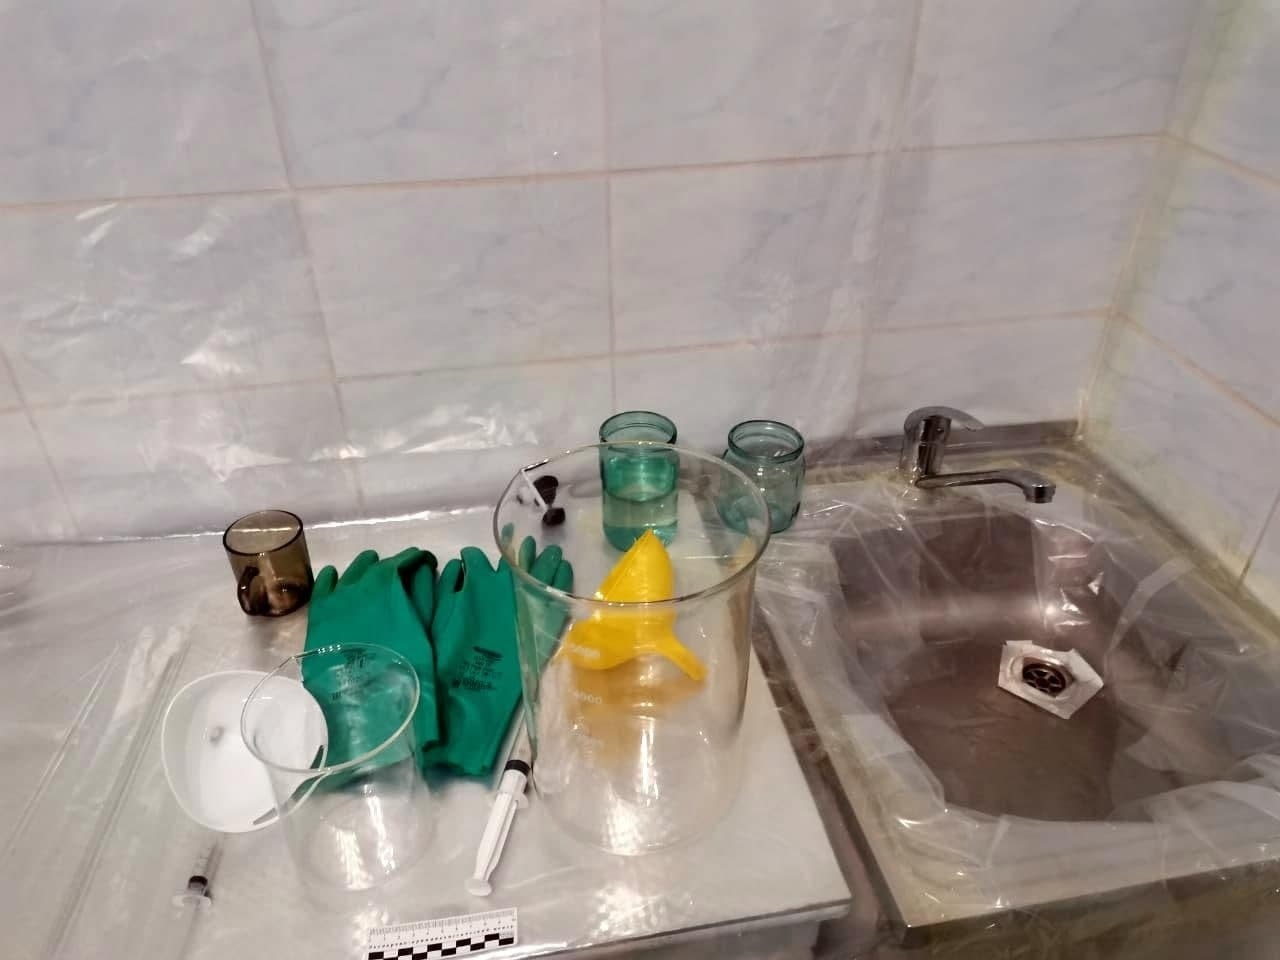 Нарколаборатория обнаружена в пригороде столицы Приамурья